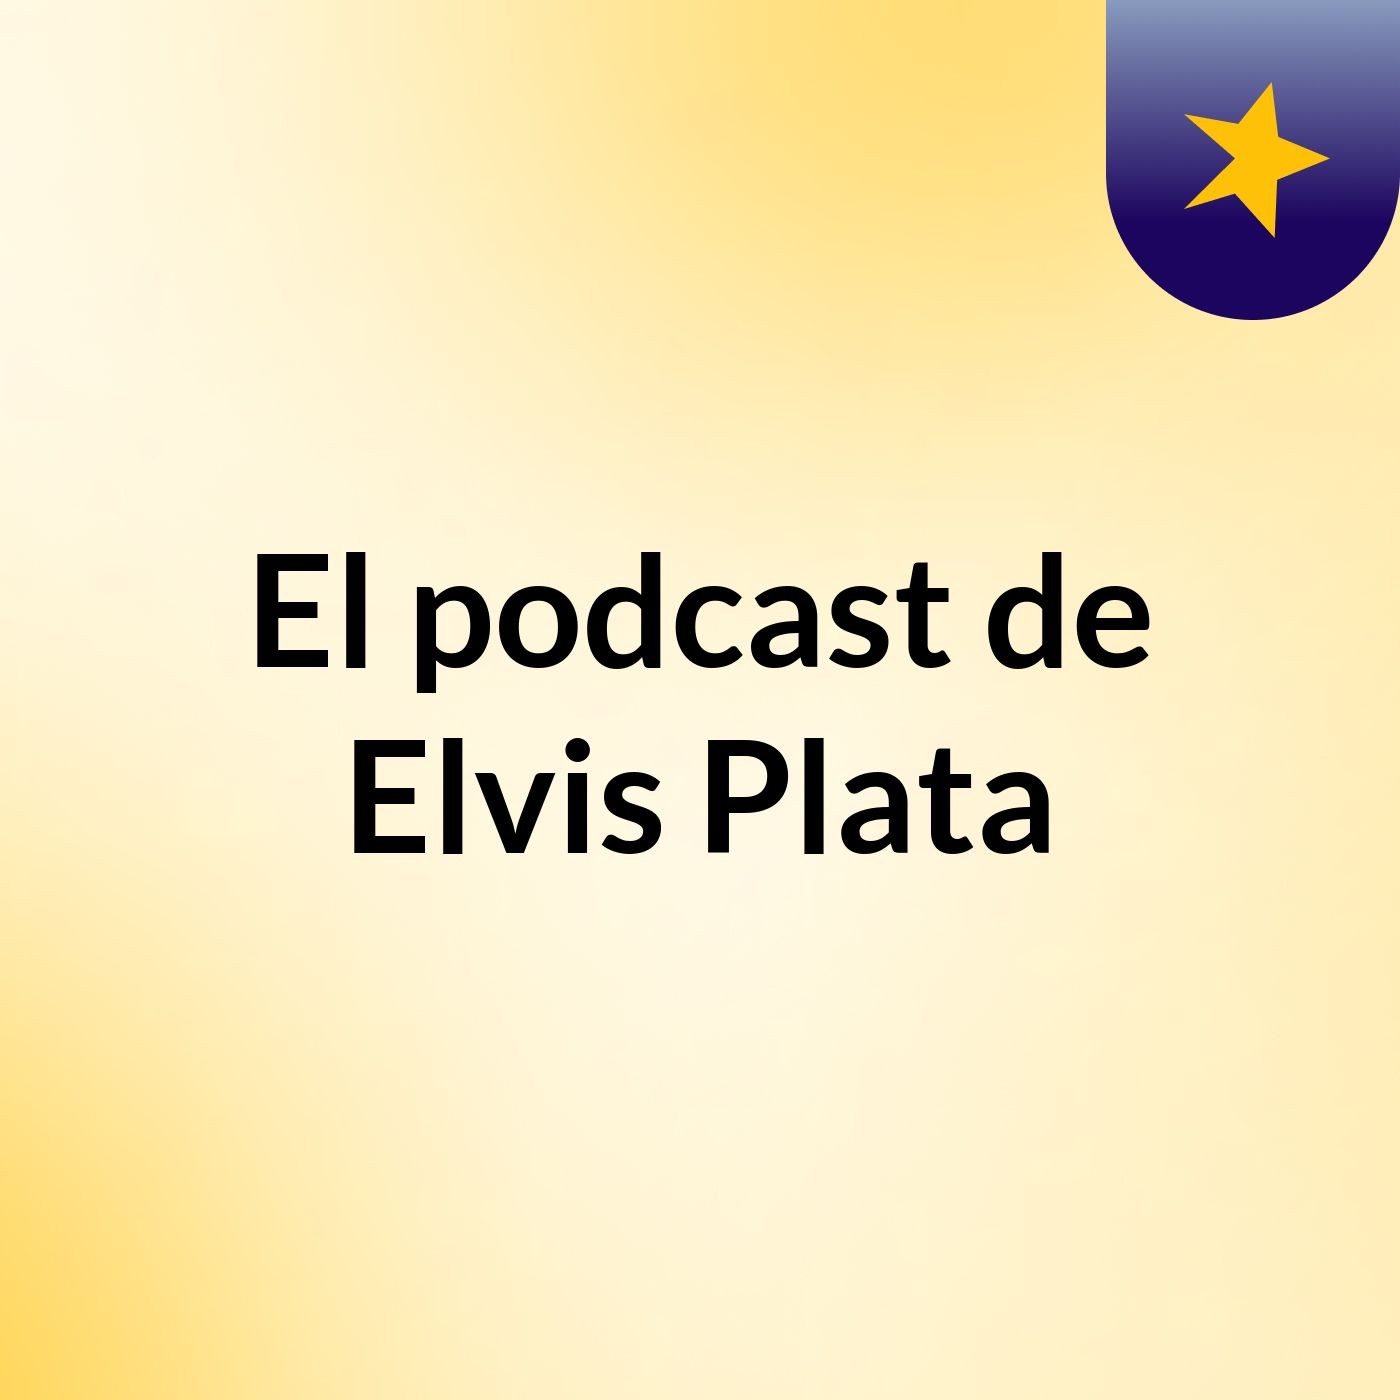 El podcast de Elvis Plata